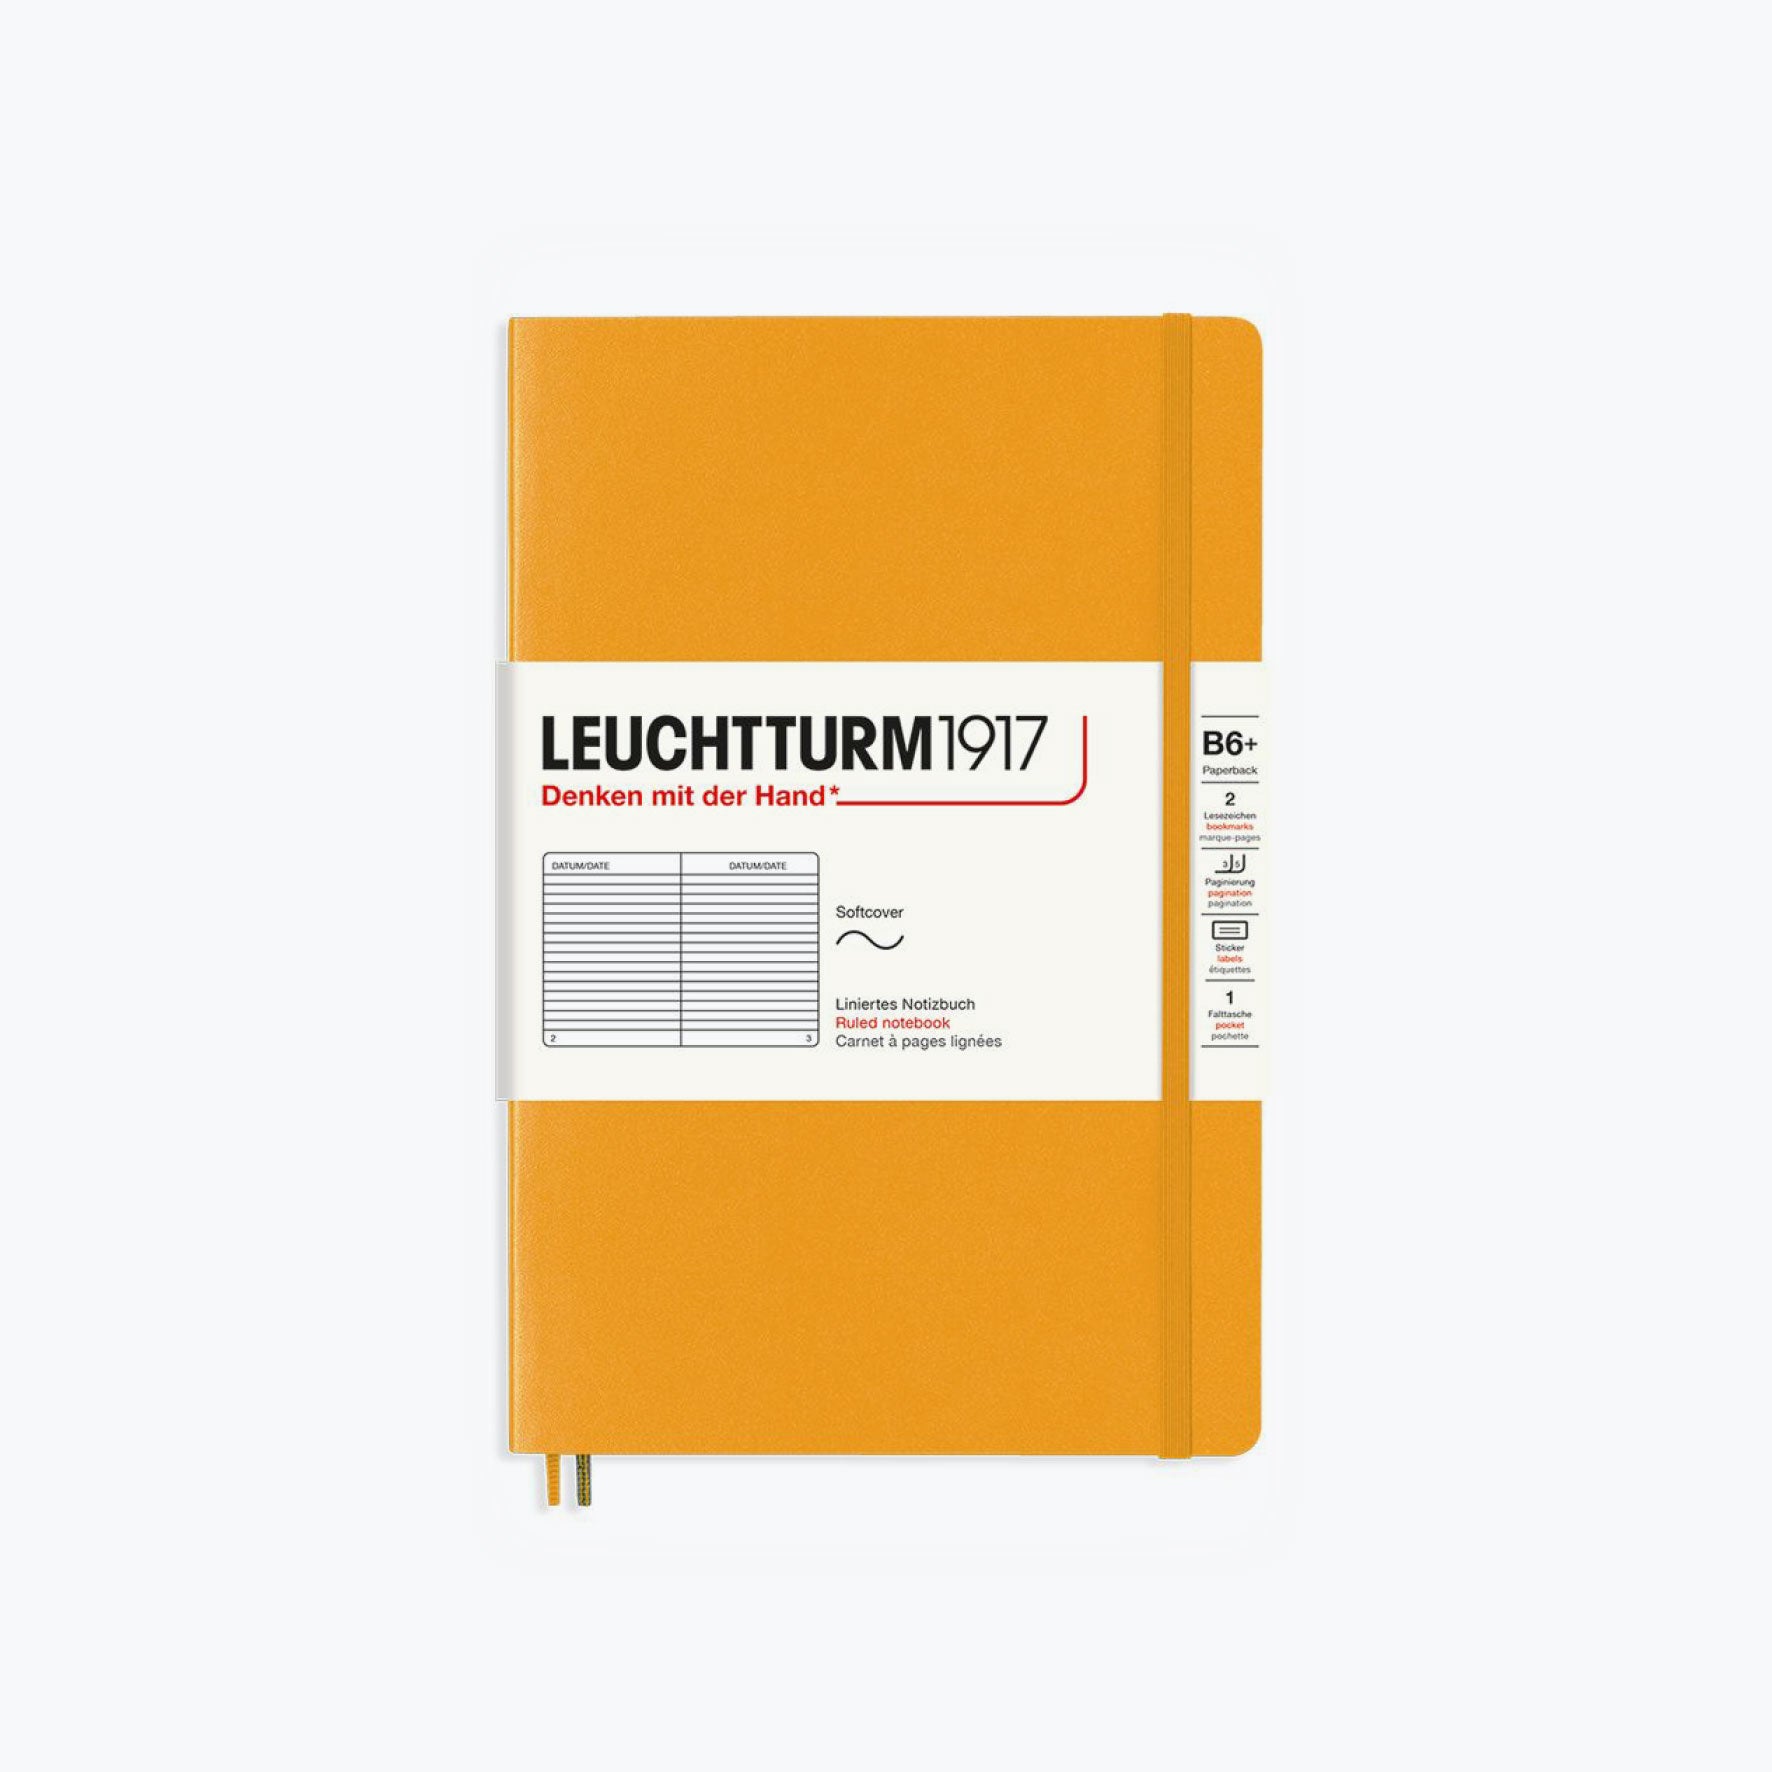 Leuchtturm1917 - Notebook - Softcover - B6+ - Rising Sun